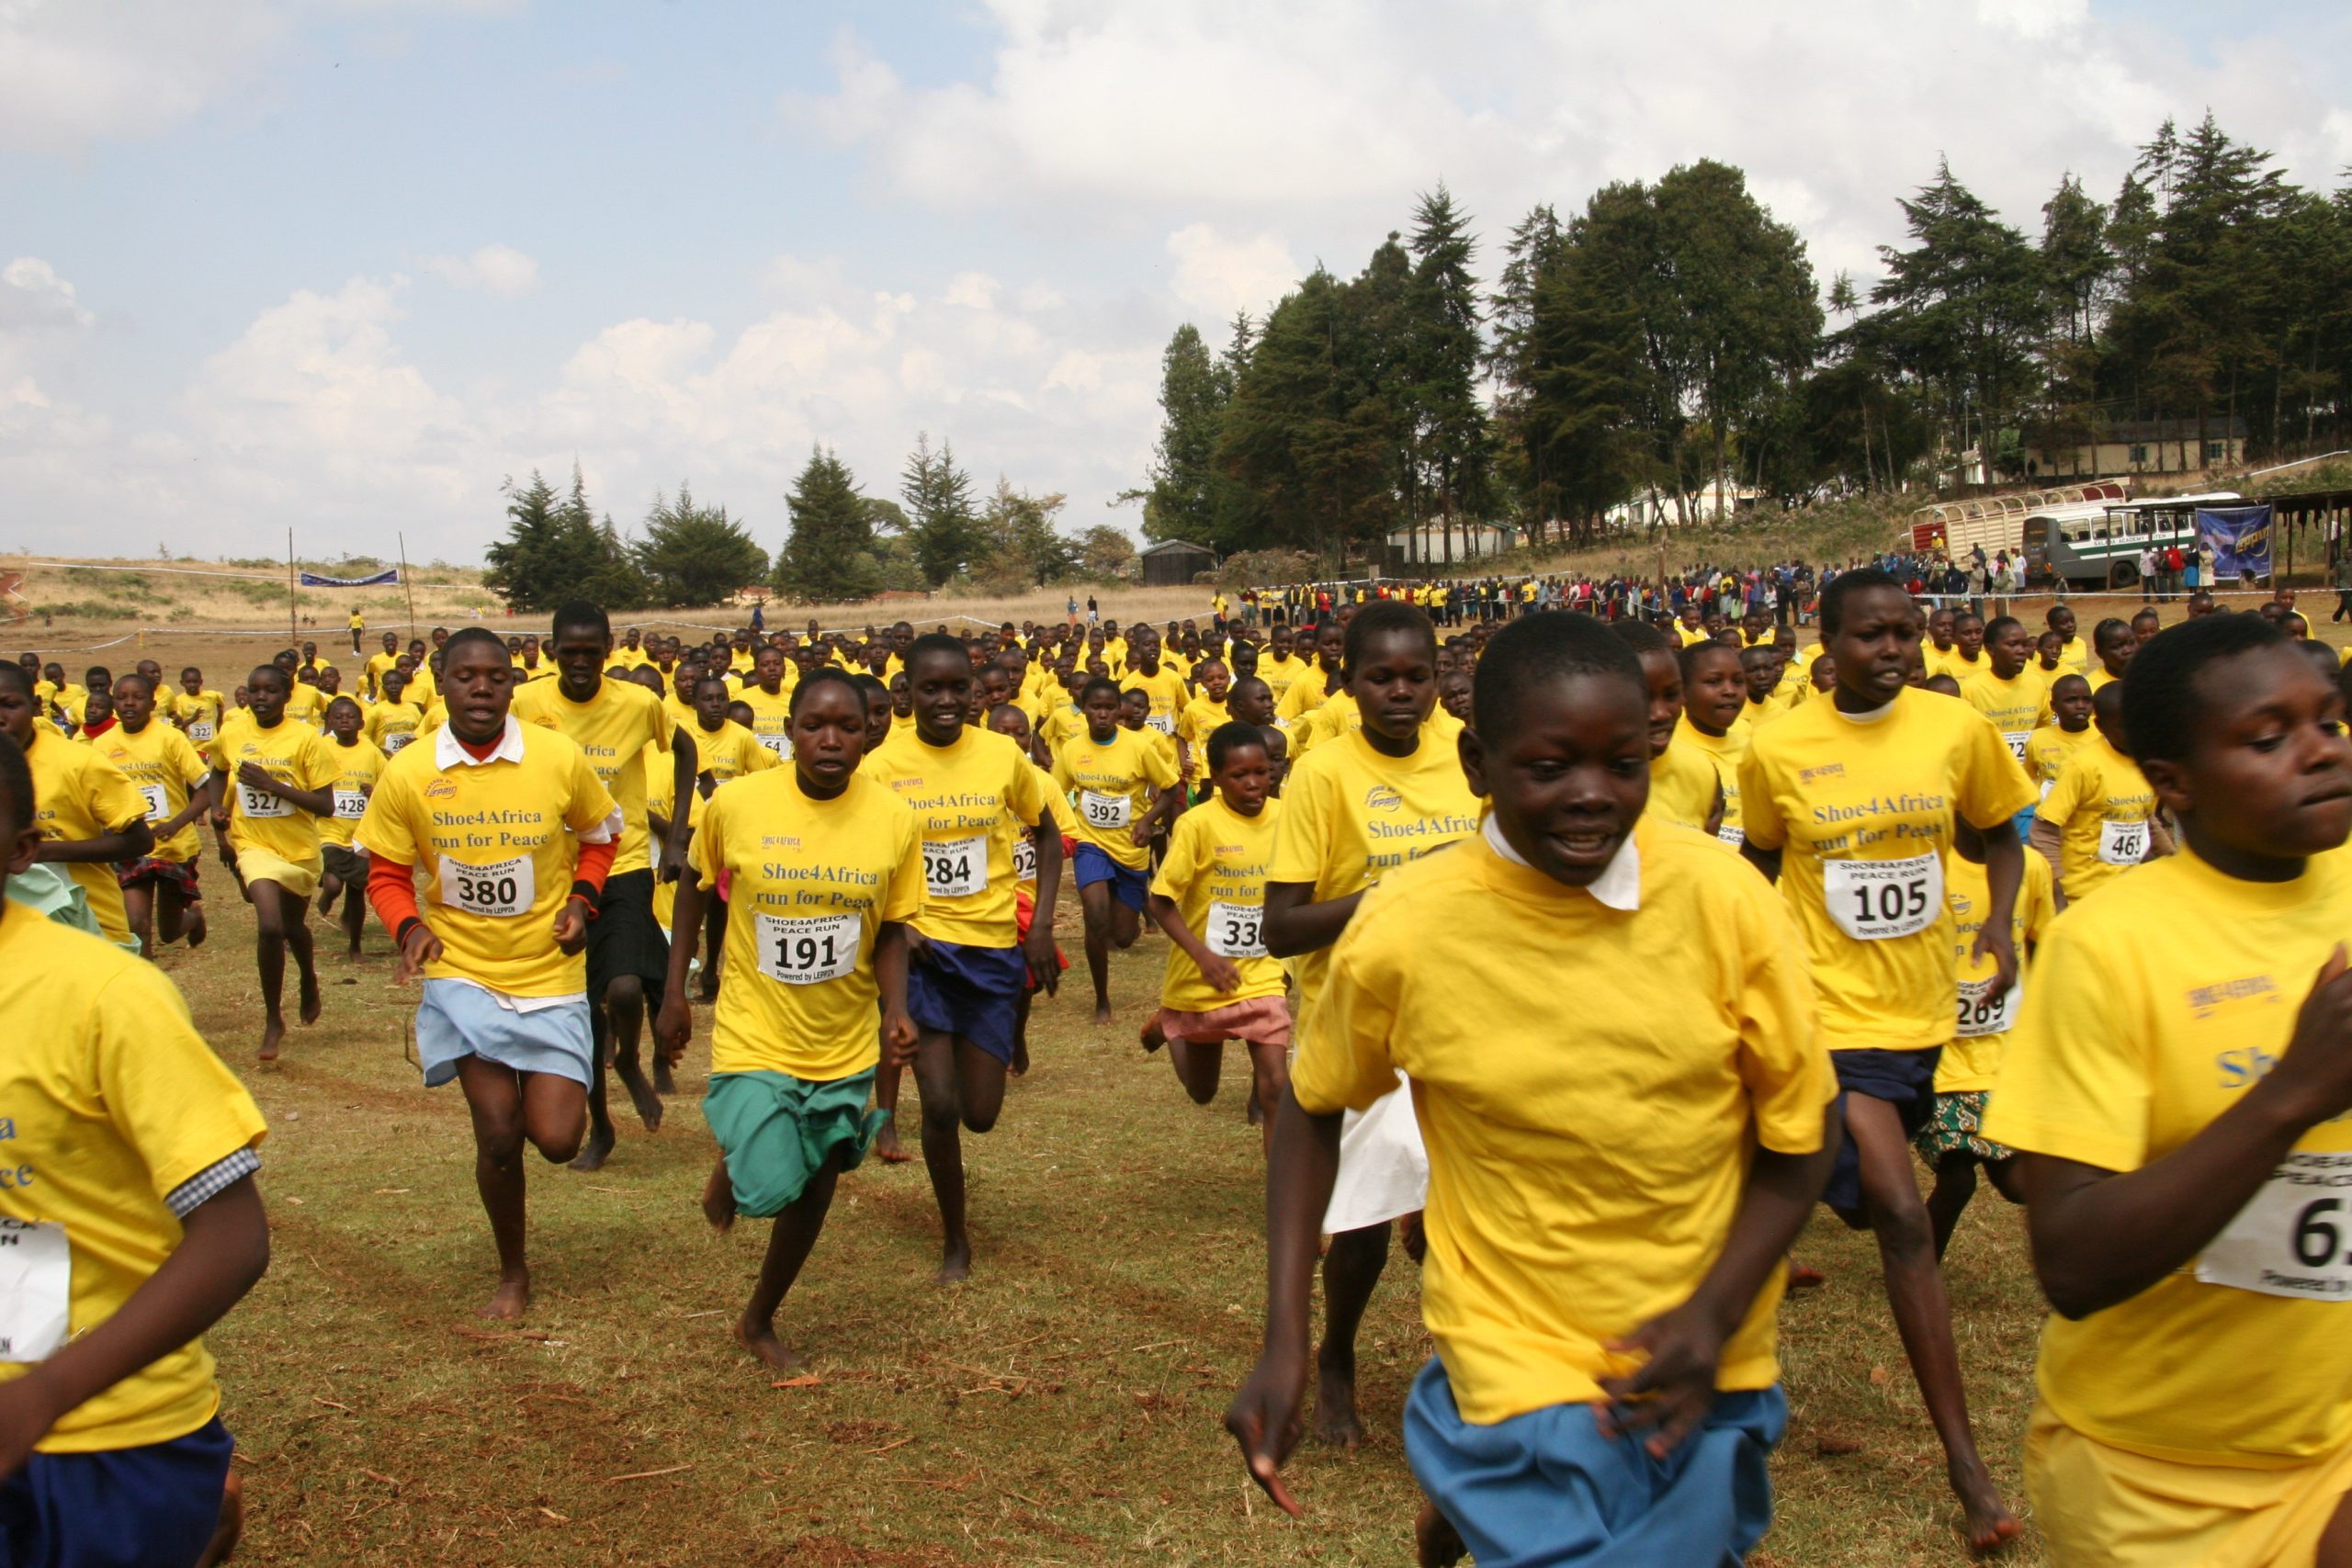 Kenyan school girls run for peace at a Shoe4Africa event.